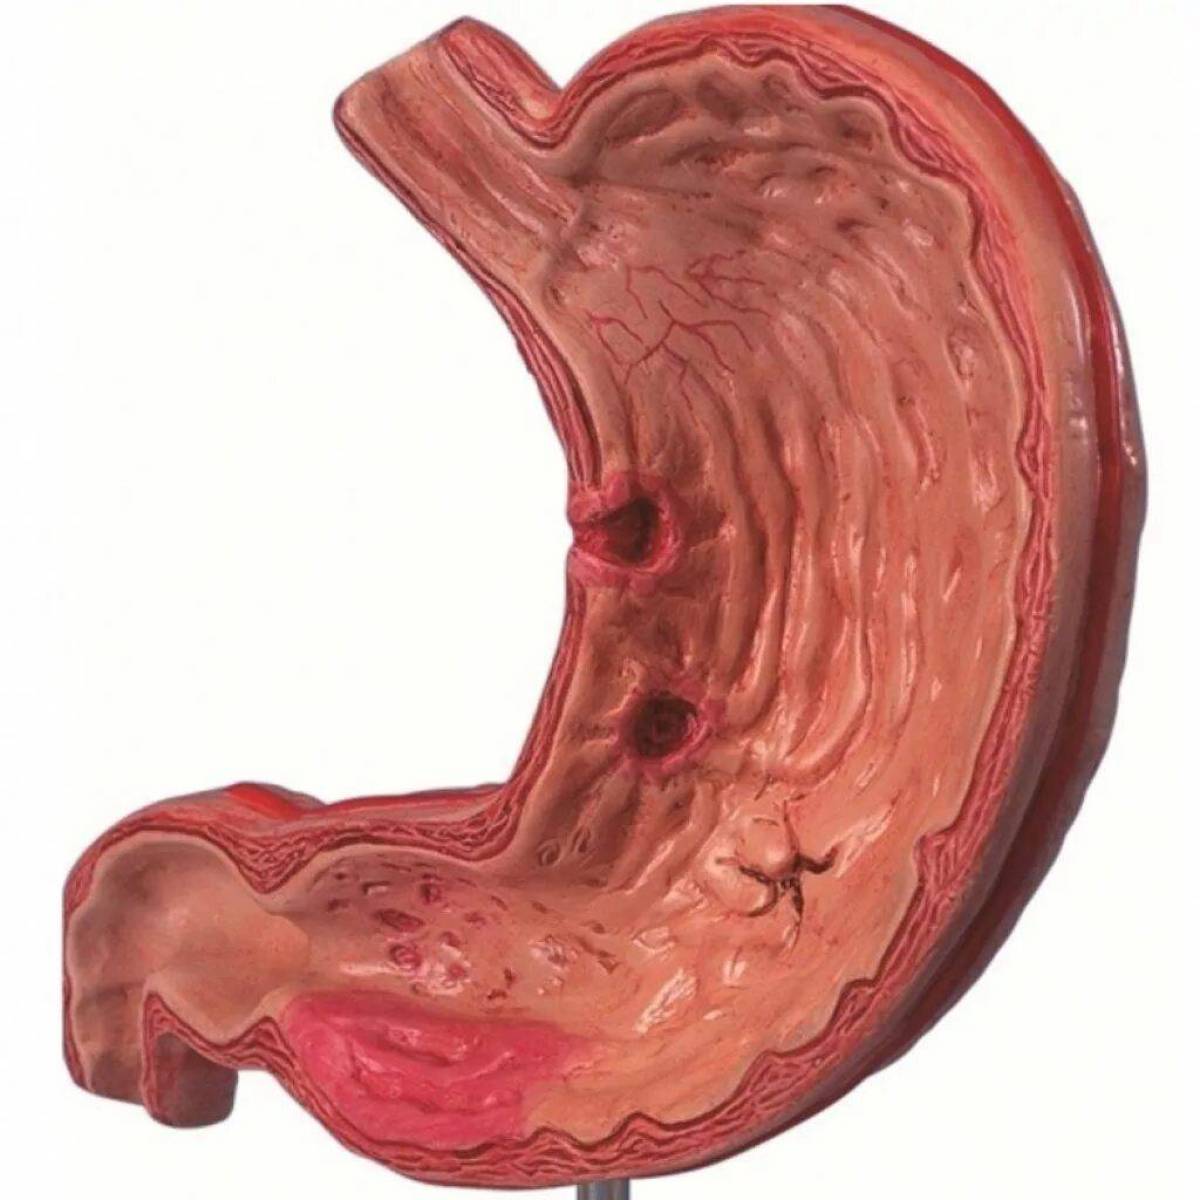 Тотальный желудка. Острый эрозивный гастрит макропрепарат. Хронический гастродуоденит.